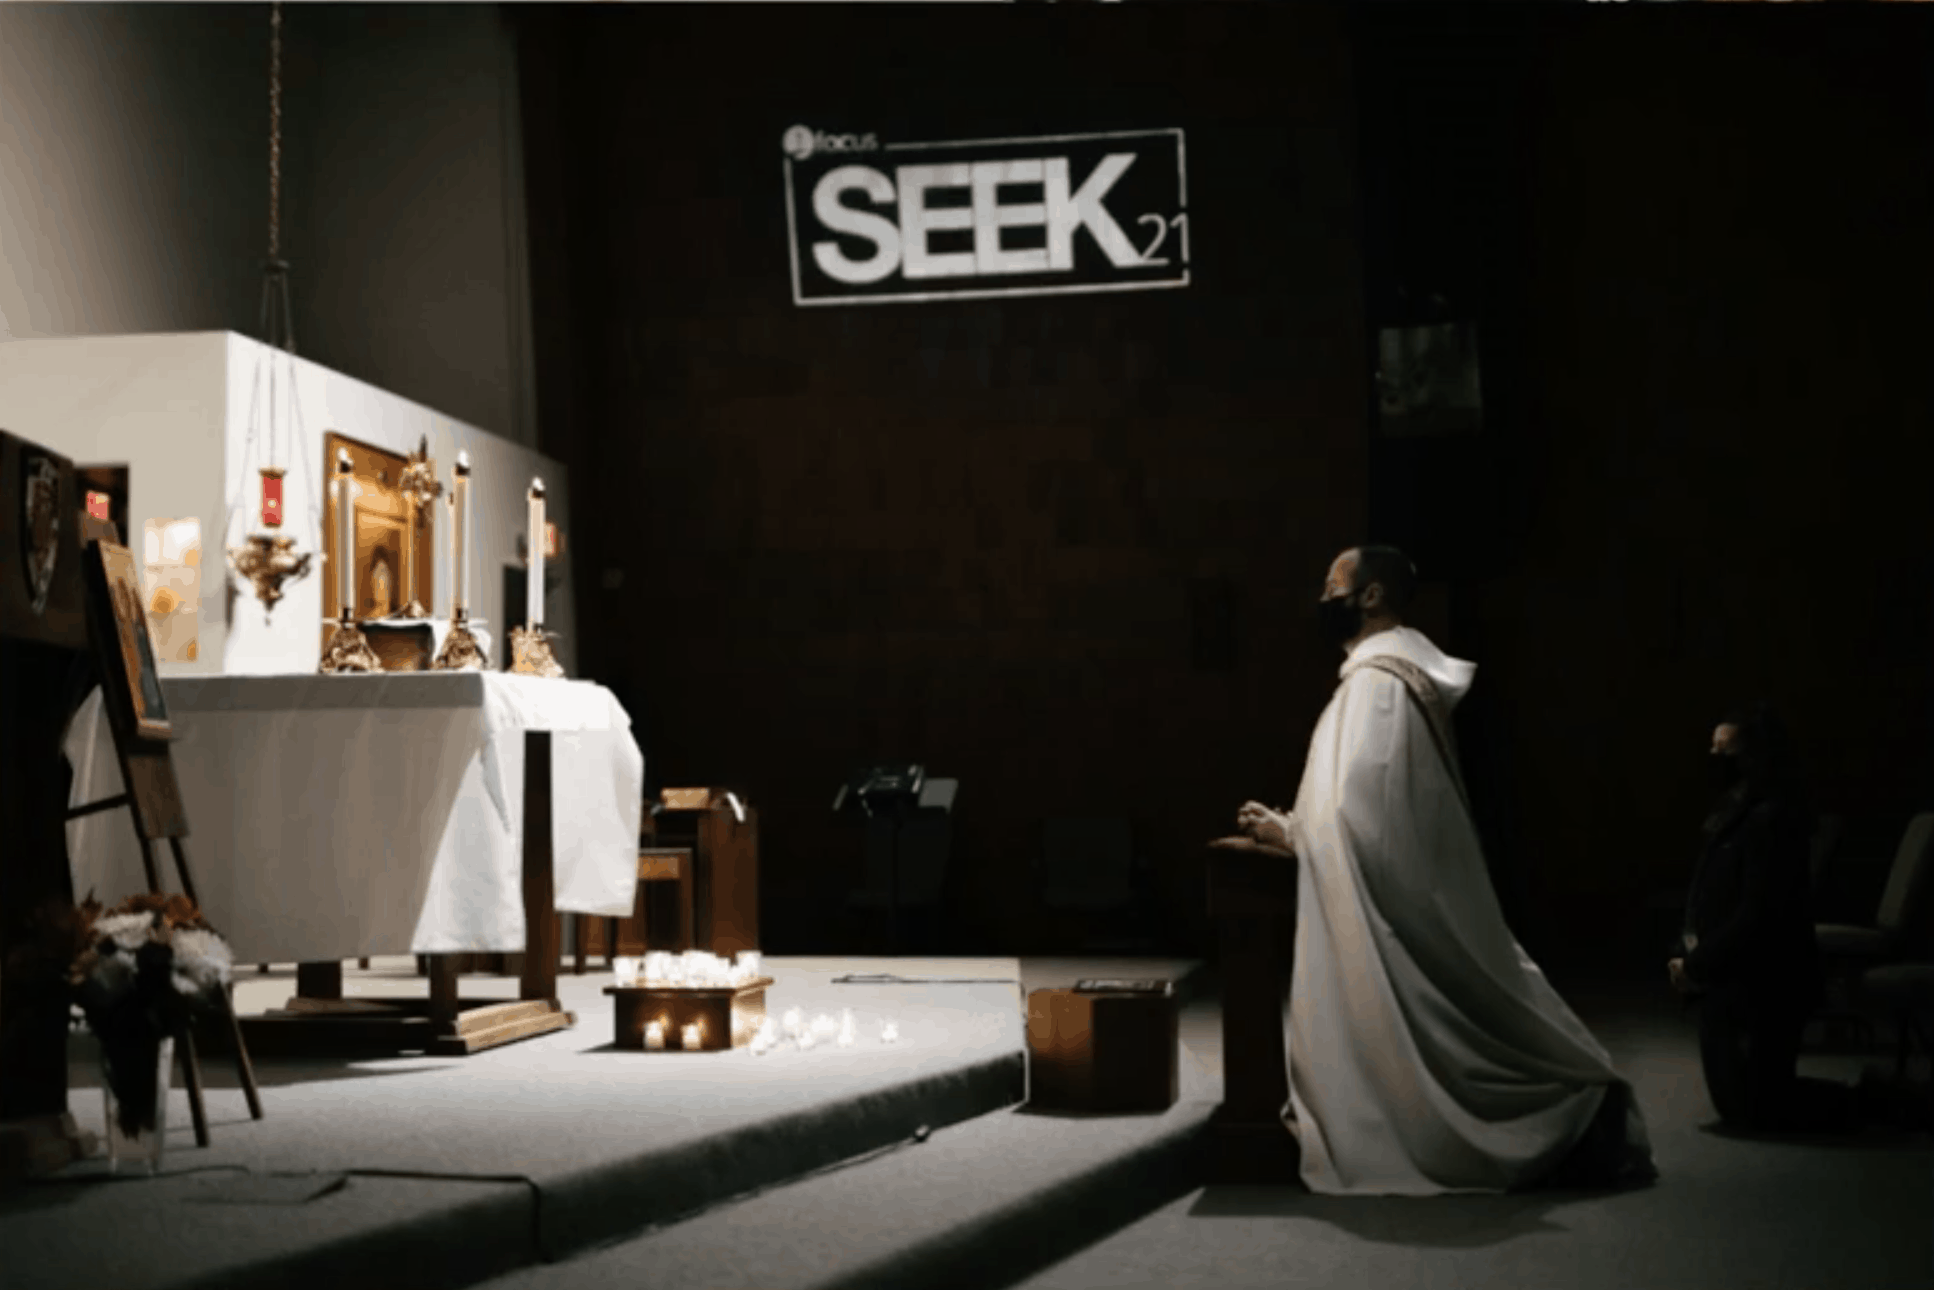 5 Takeaways from SEEK21